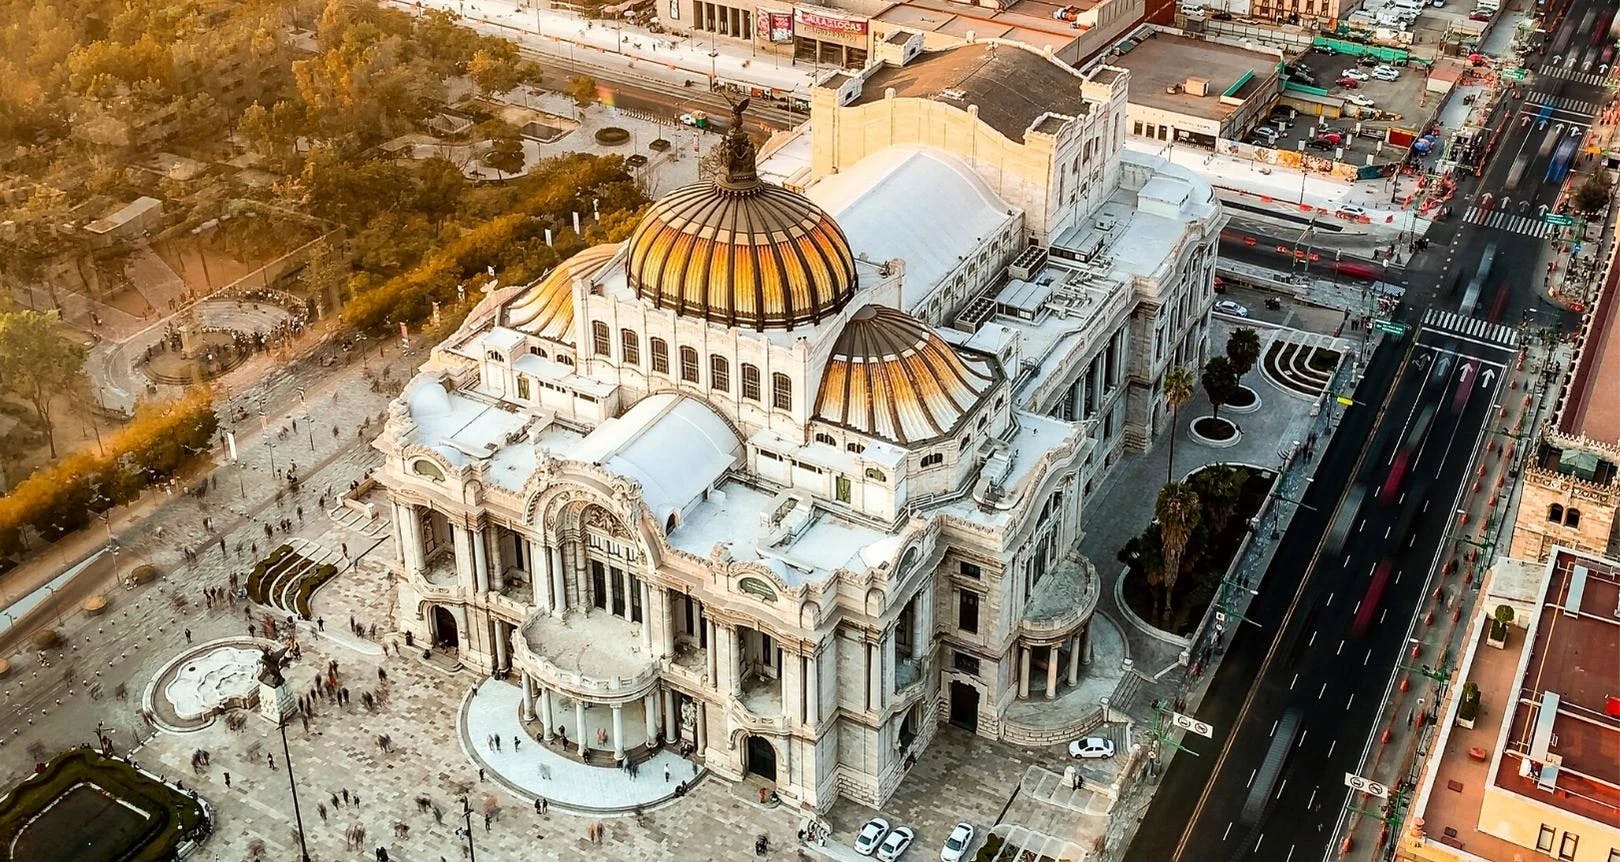 Mexico City Center